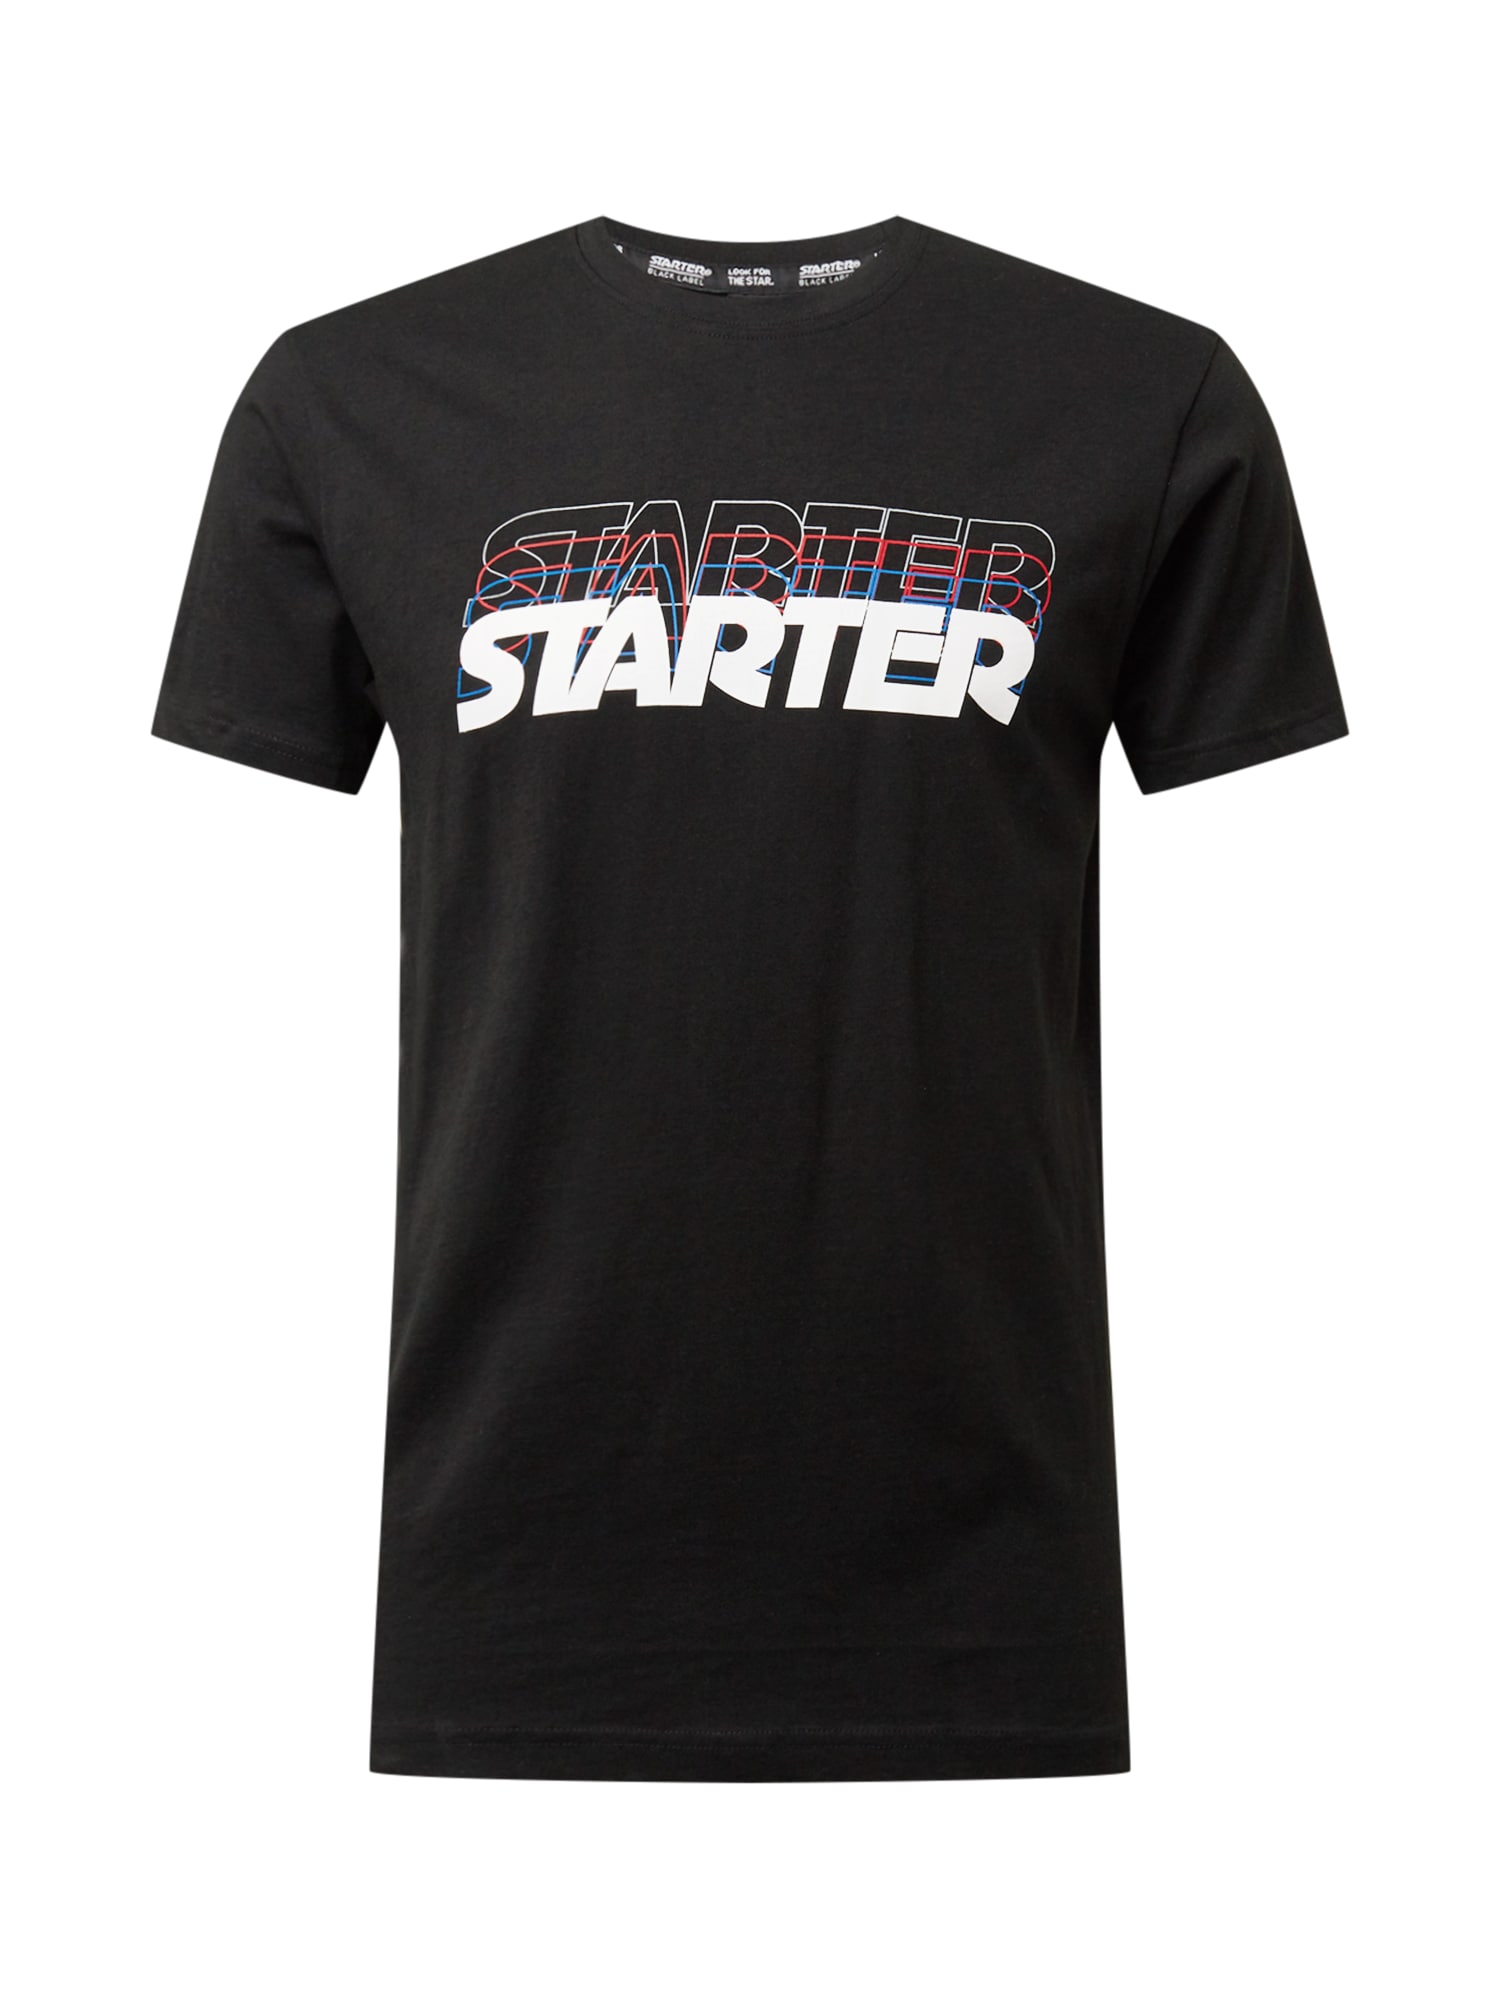 Starter Black Label Marškinėliai juoda / balta / granatų spalva / dangaus žydra